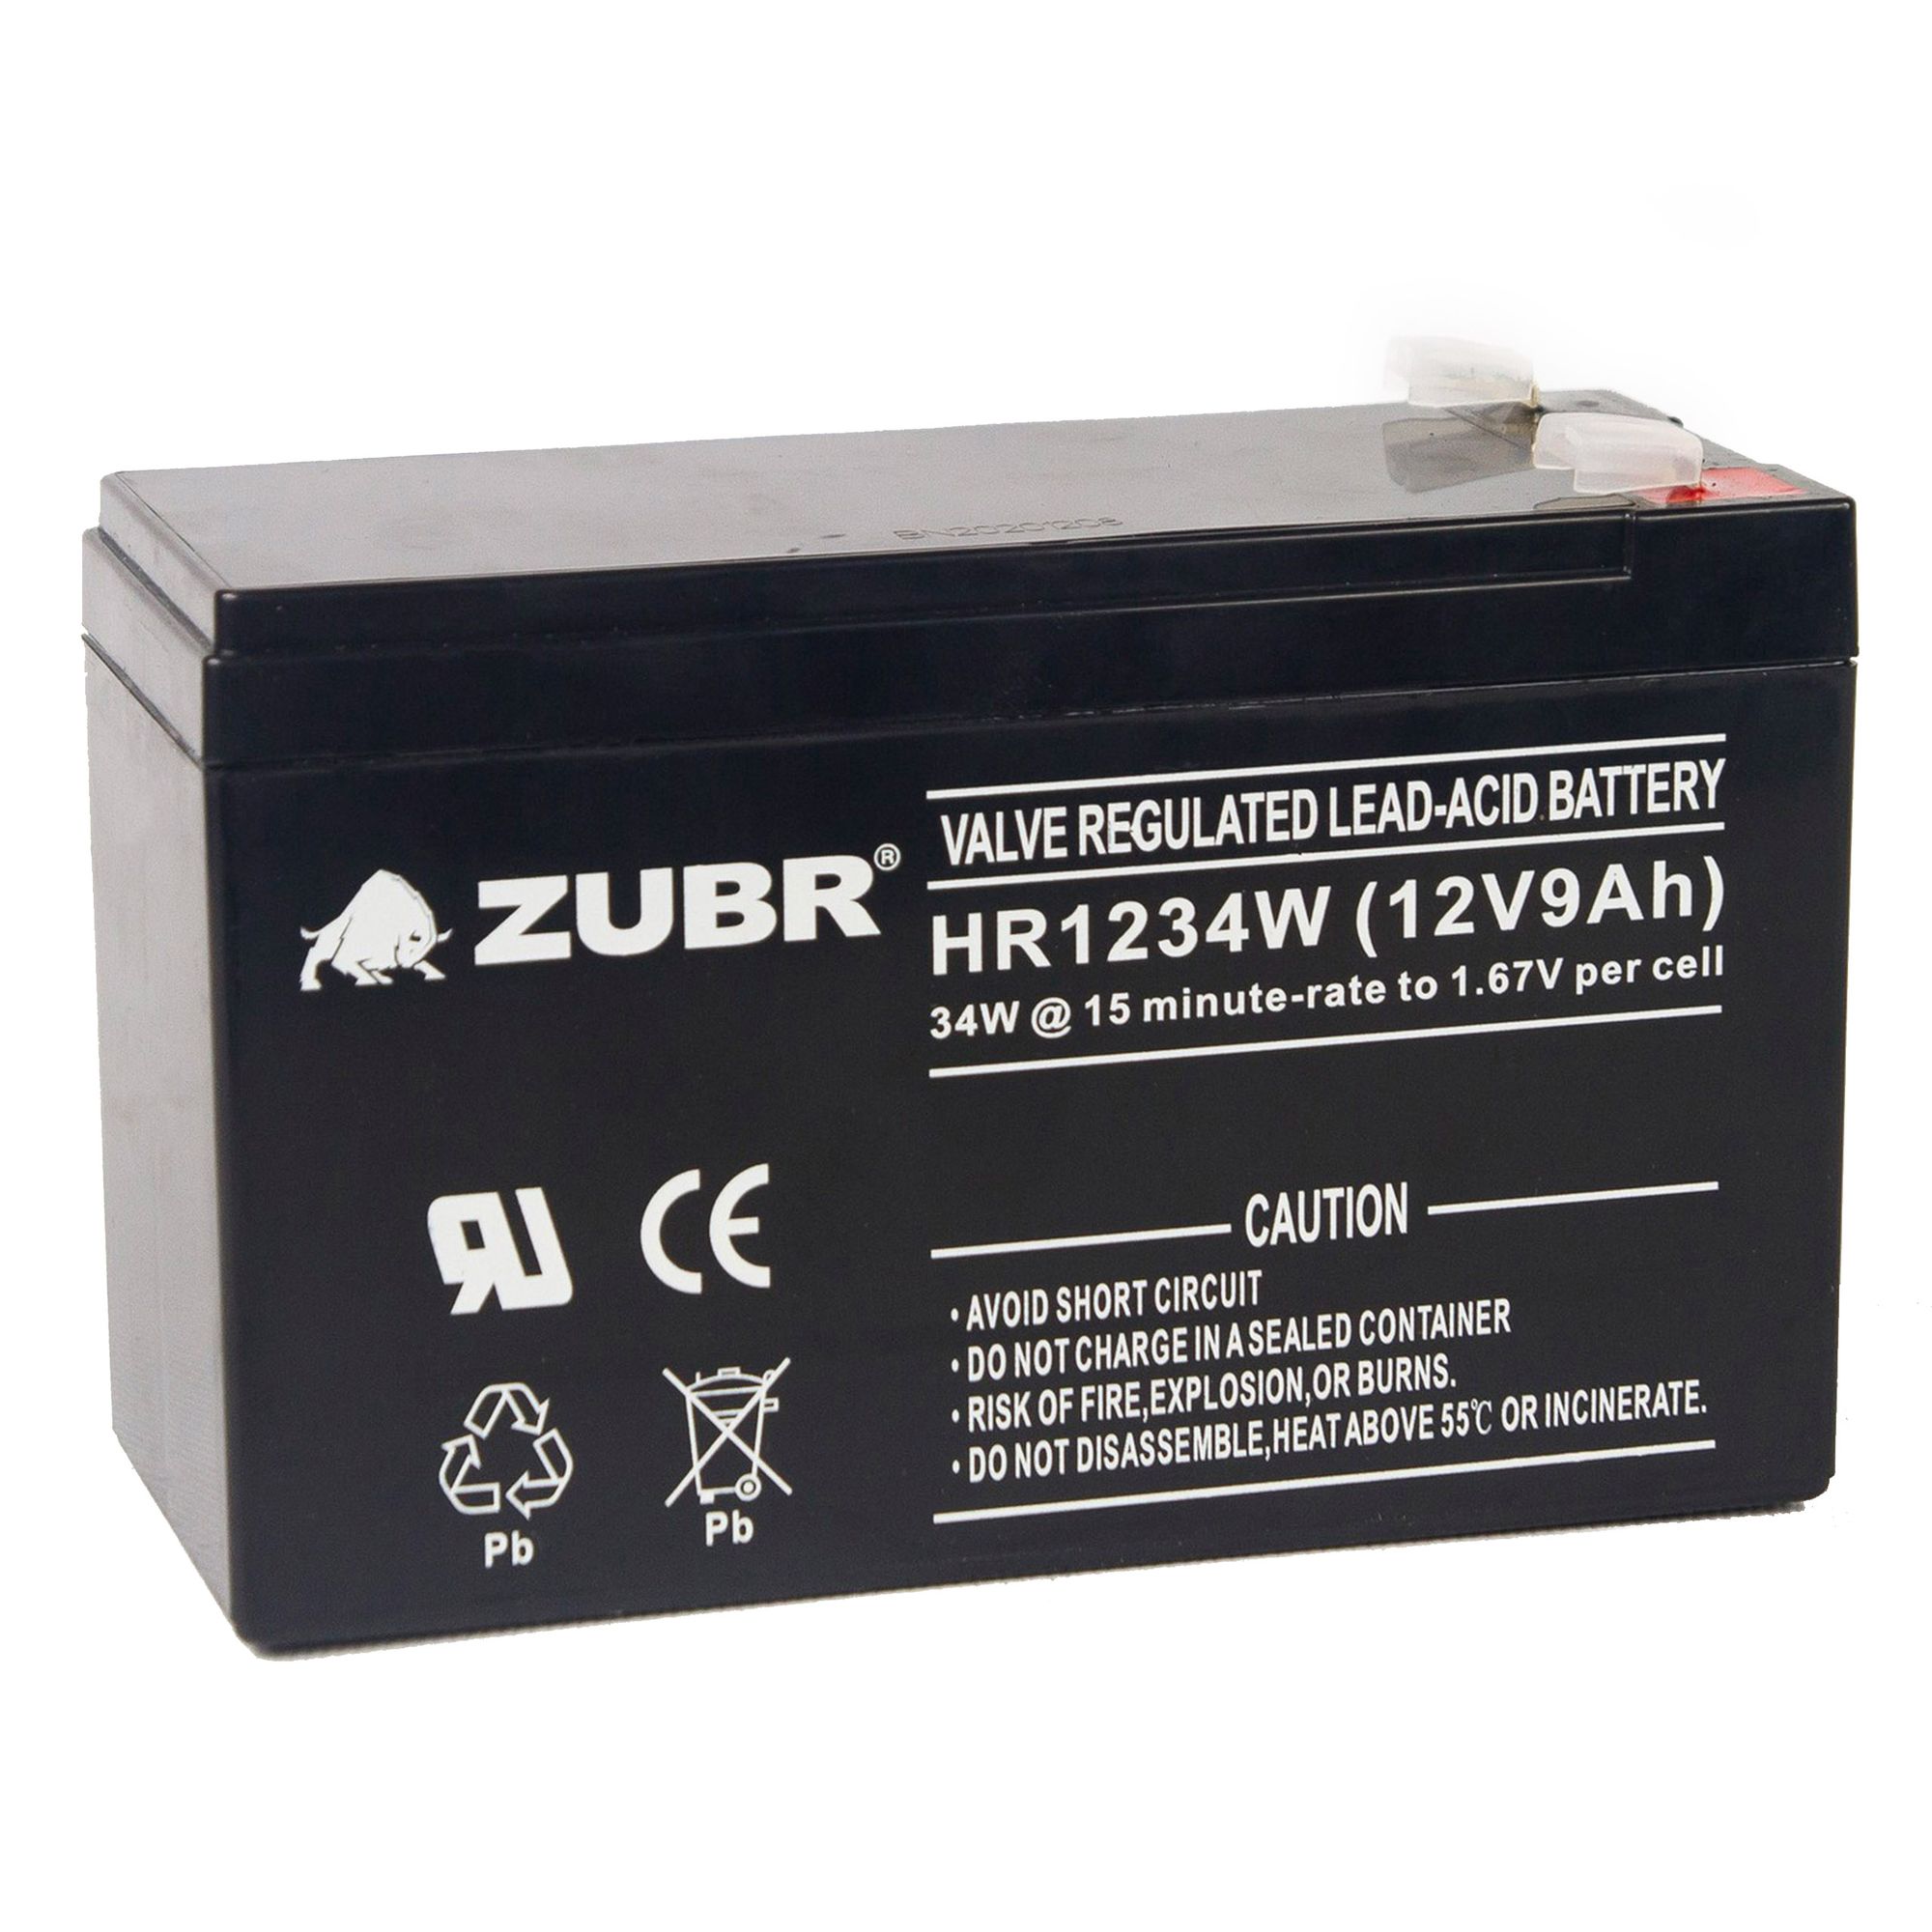 Батарея для ИБП ZUBR HR 1234 W (12V, 9Ah) (HR1234W) батарея для ибп wbr 12v 9ah hr1234w f2